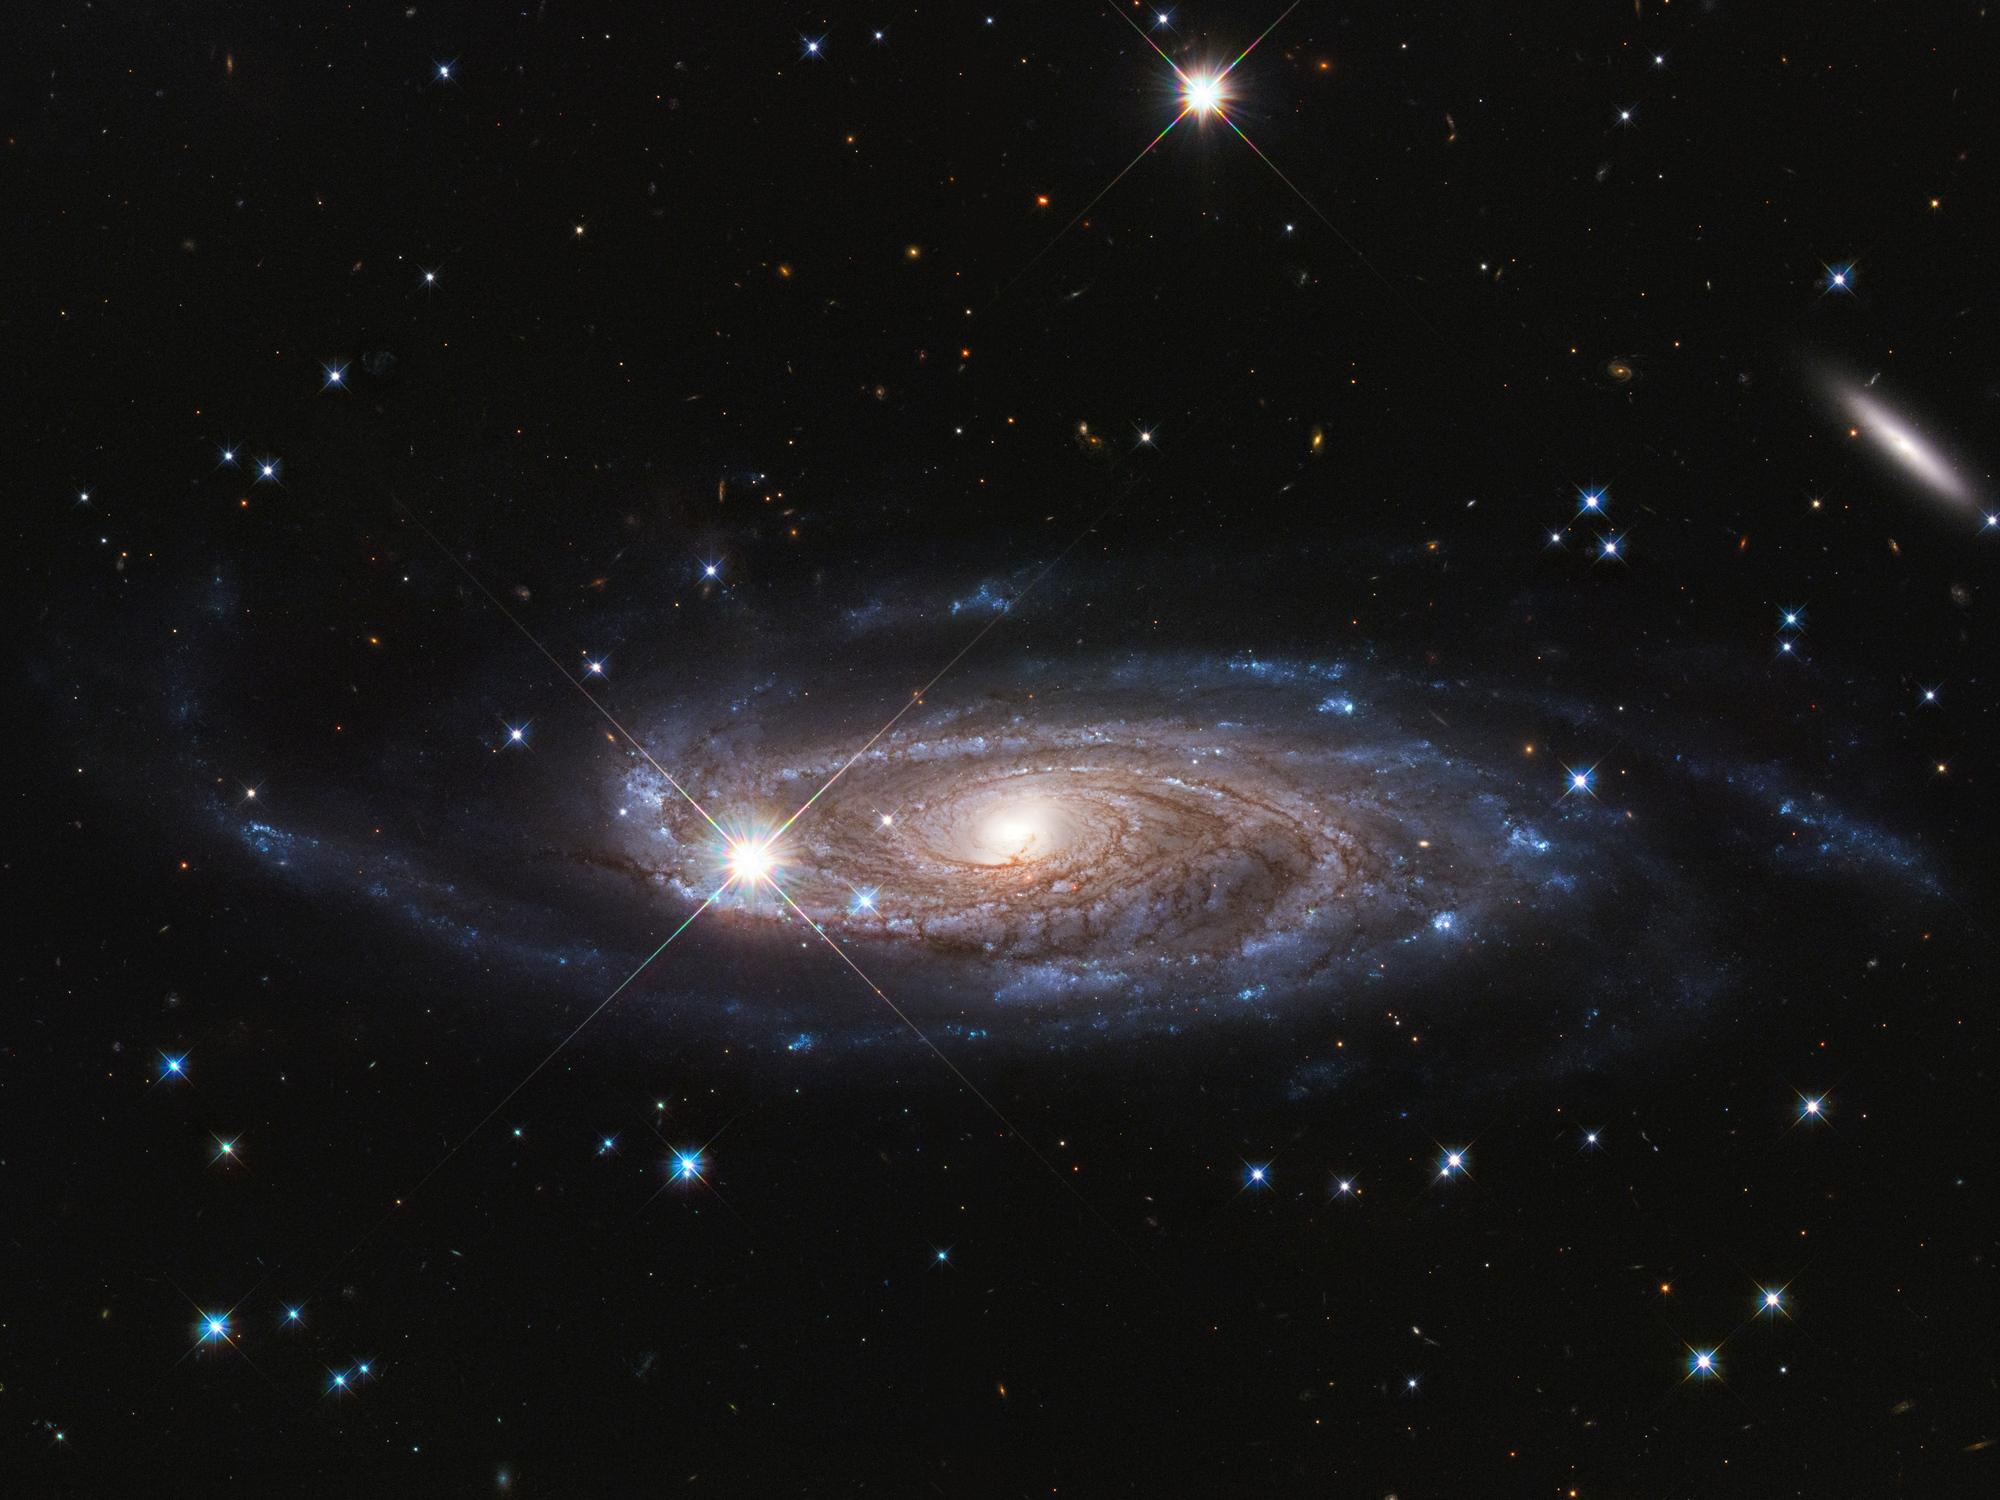 مجرّة حلزونيّة مهيبة ذات مركز ساطع ودوّامة من الغبار الكوني وأذرع زرقاء. يظهر عدد من النجوم الساطعة المدبّبة في مقدّمة الصورة